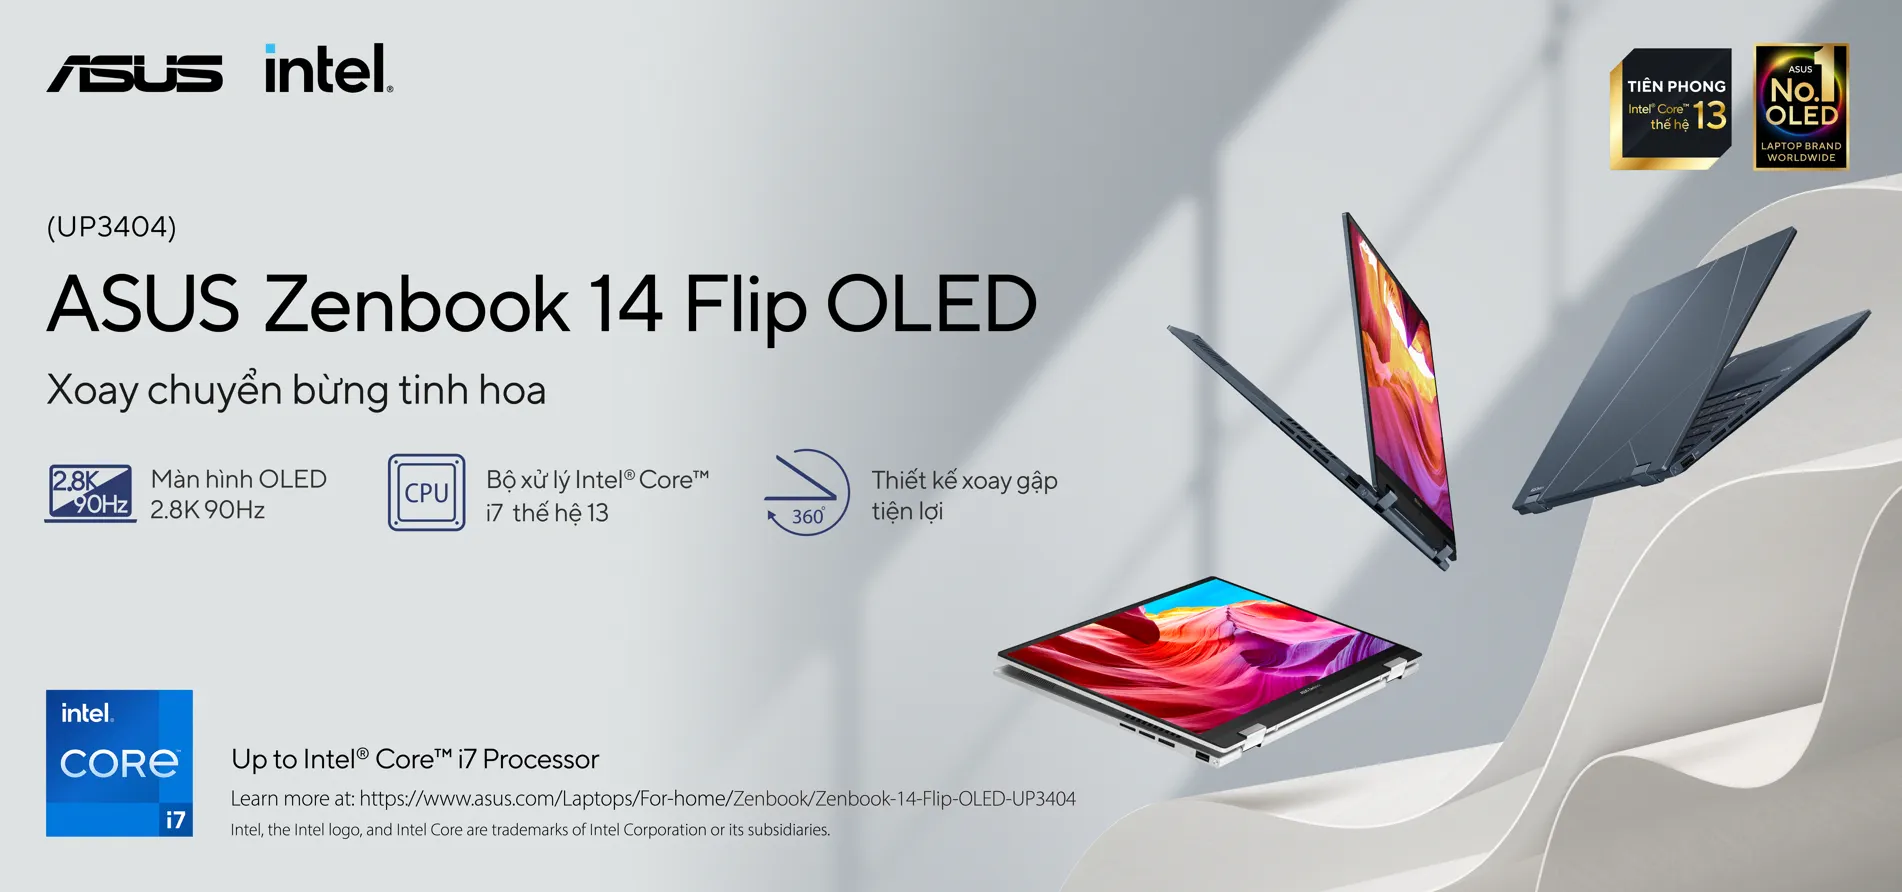 ASUS giới thiệu dải sản phẩm laptop OLED tiên phong trang bị bộ vi xử lý Intel Core thế hệ 13